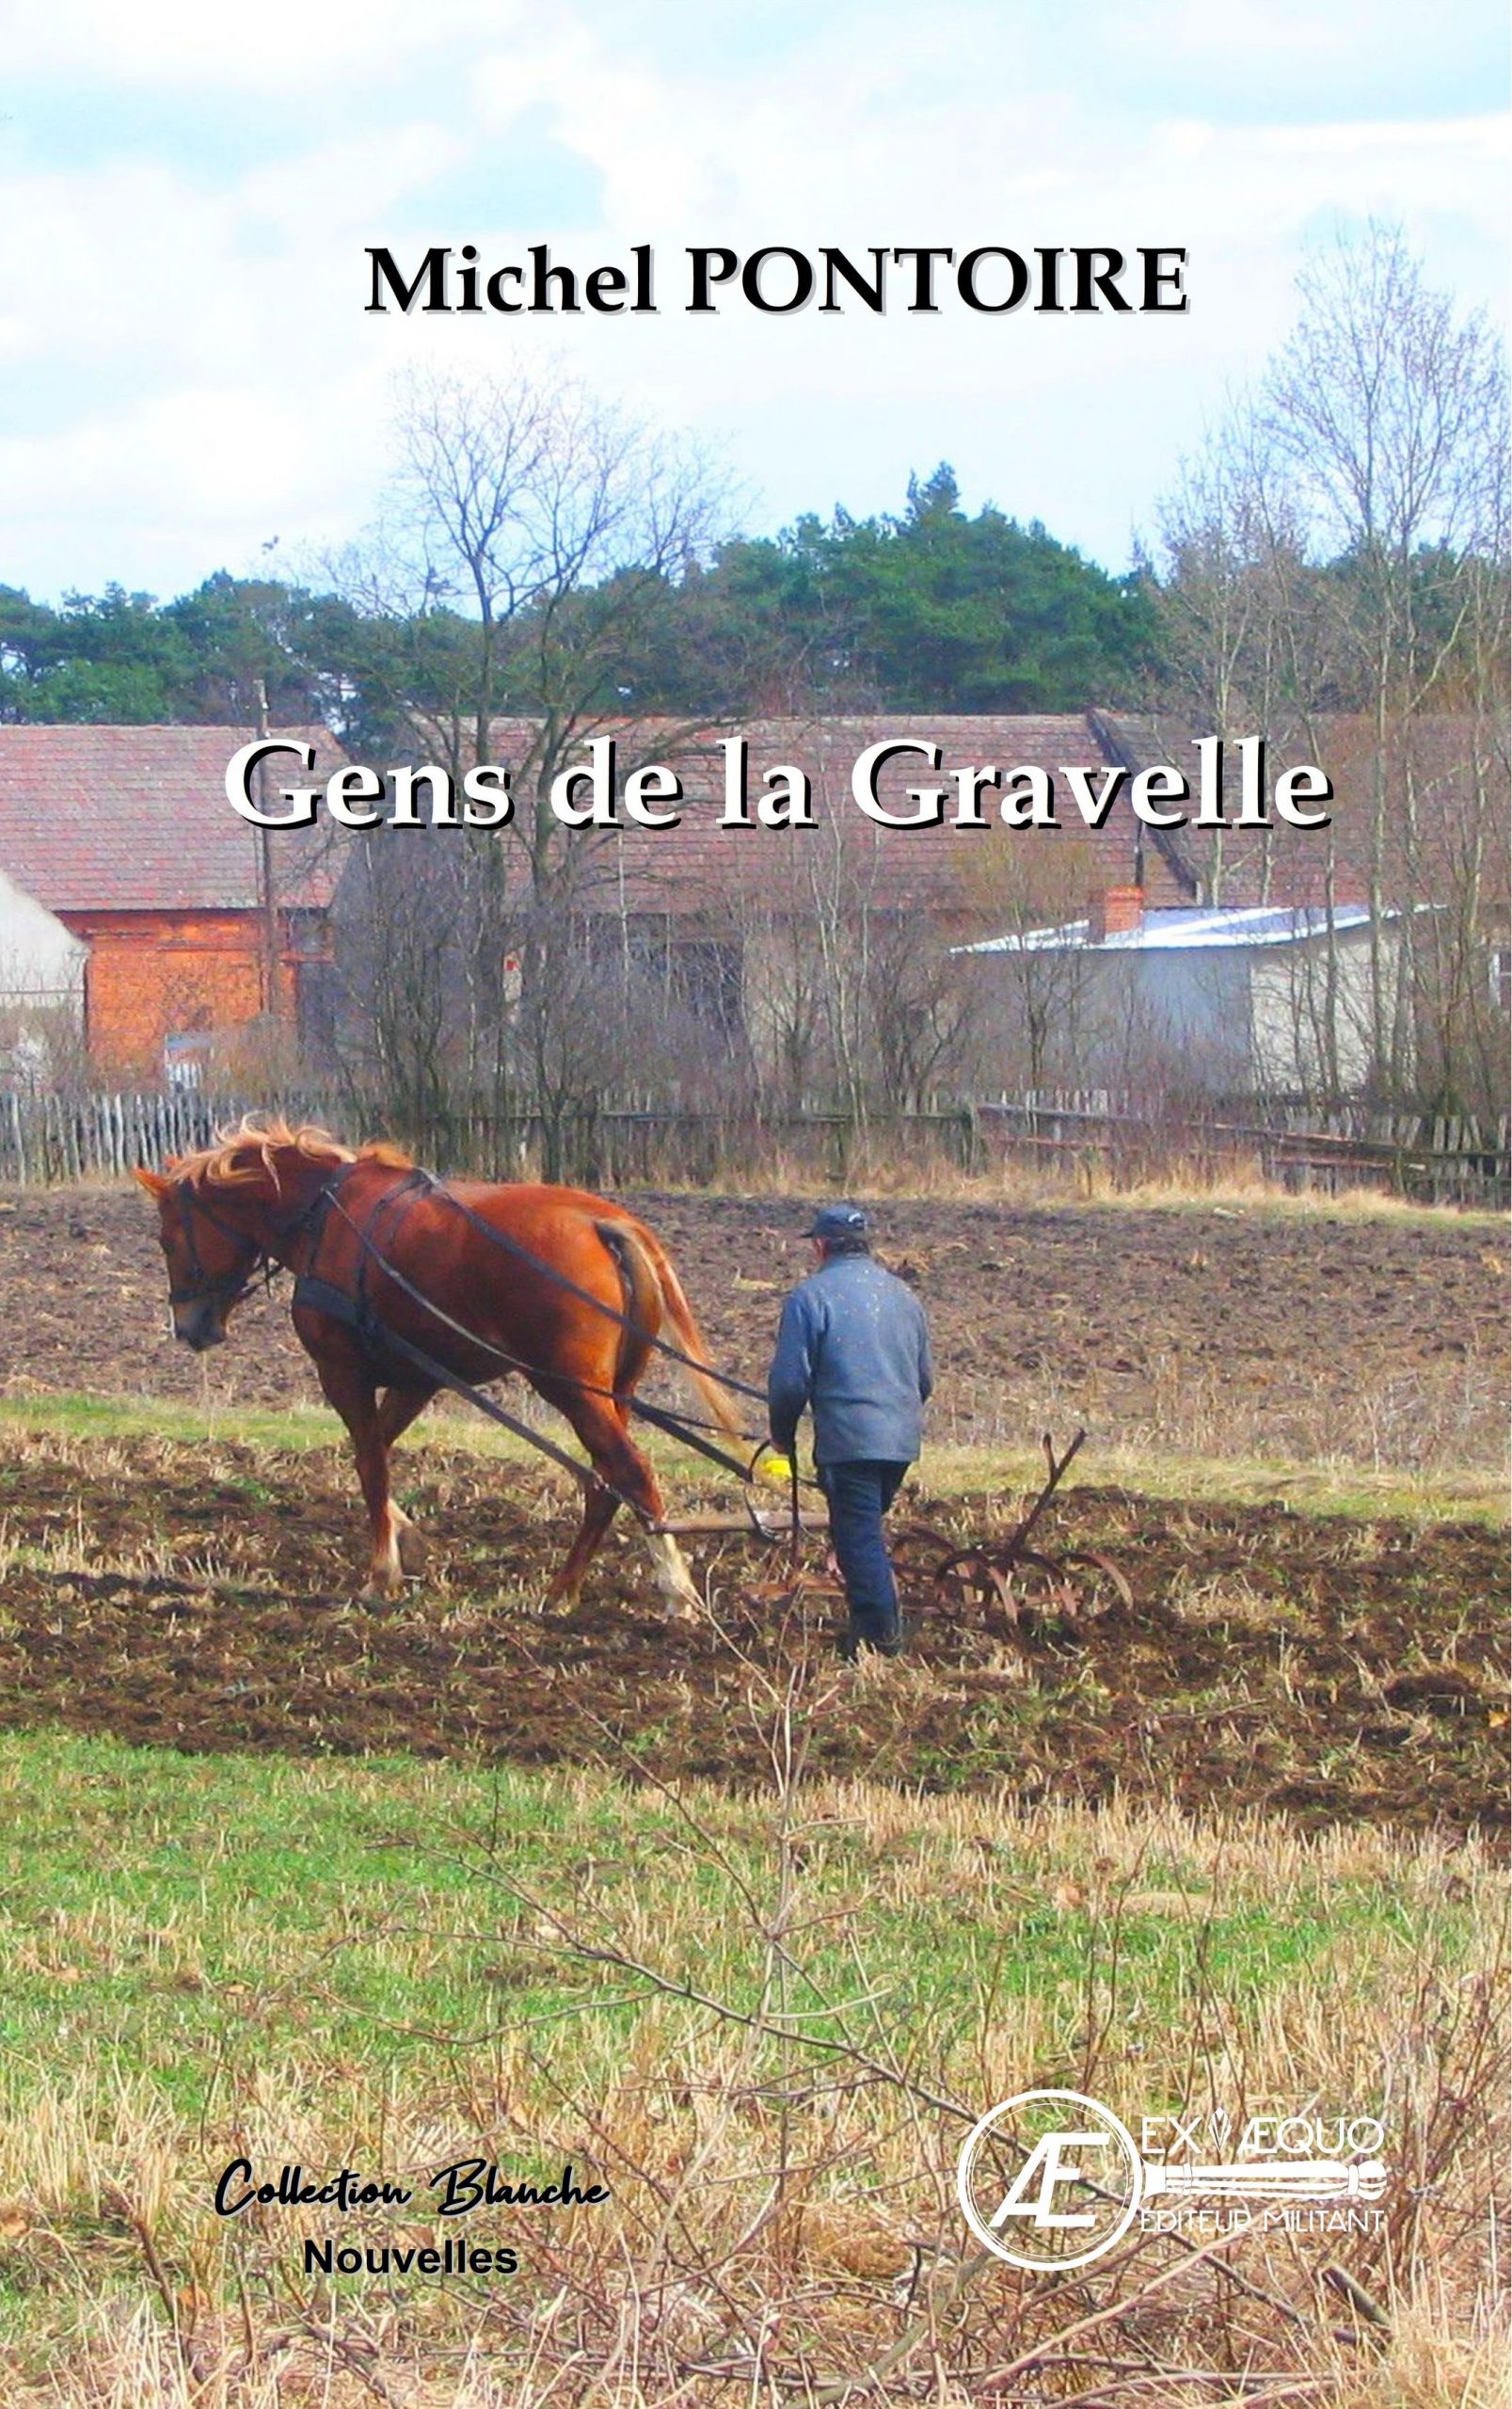 You are currently viewing Gens de la Gravelle, de Michel Pontoire